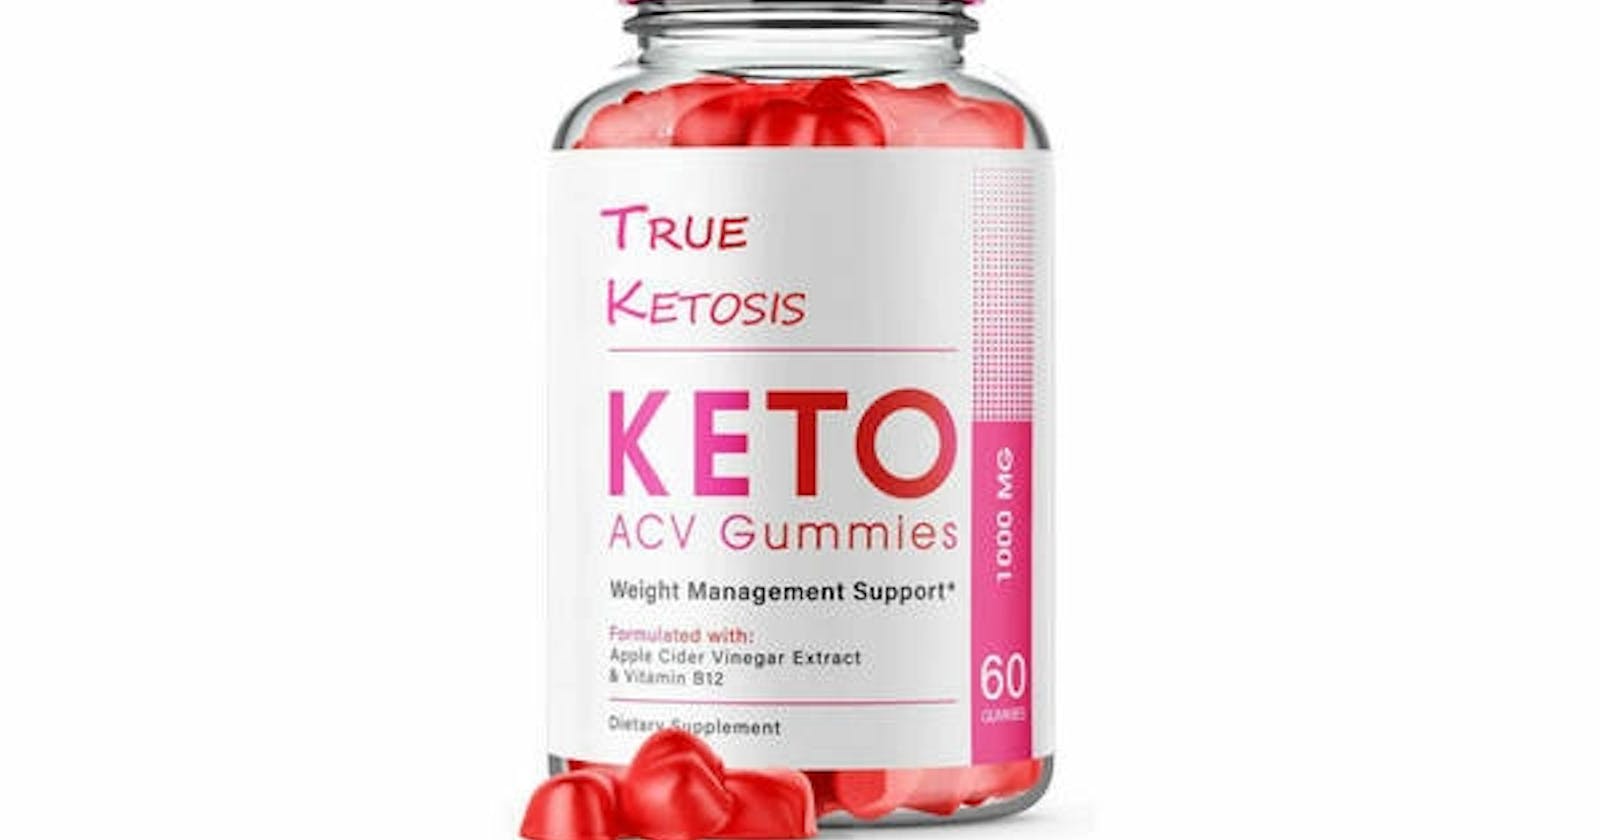 True Ketosis Keto Gummies Reviews, Price and Ingredients